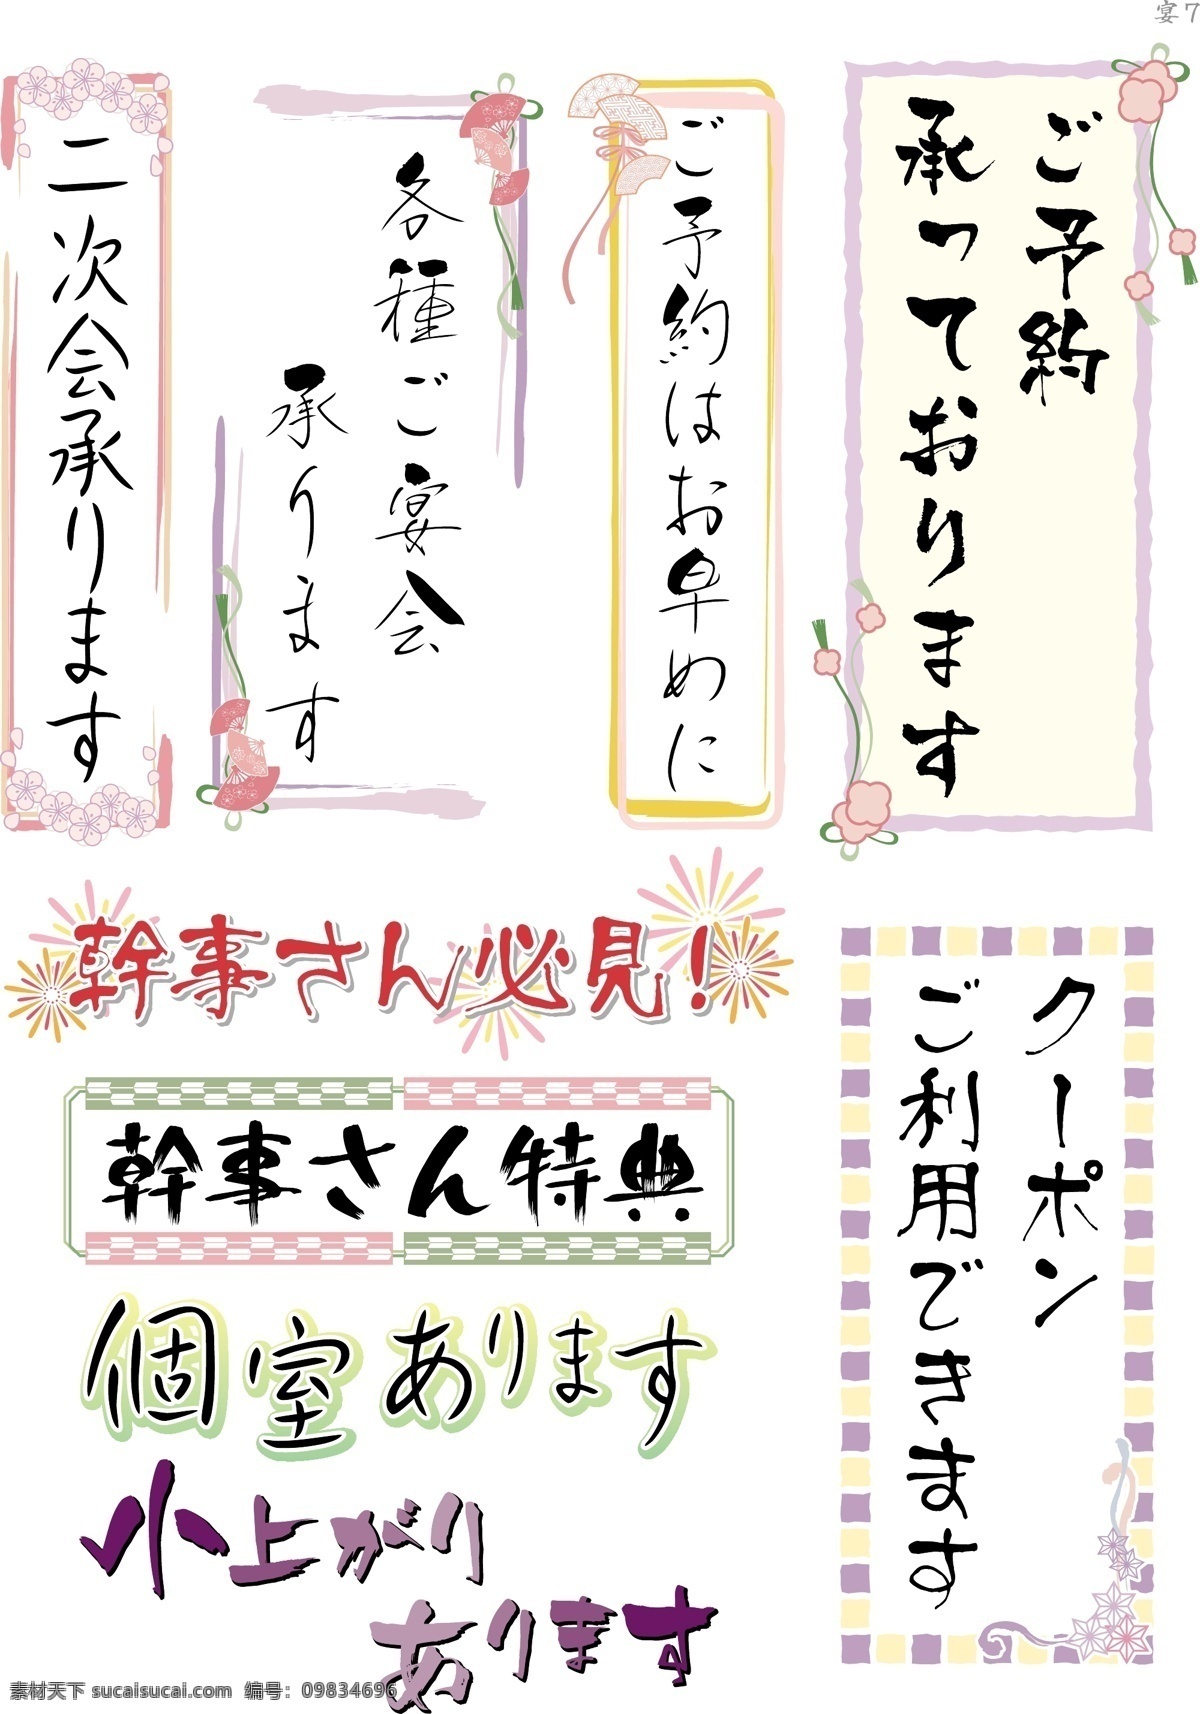 艺术 字 日本字体 艺术字 中文字库 中文字体 字库 字体设计 日语 矢量图